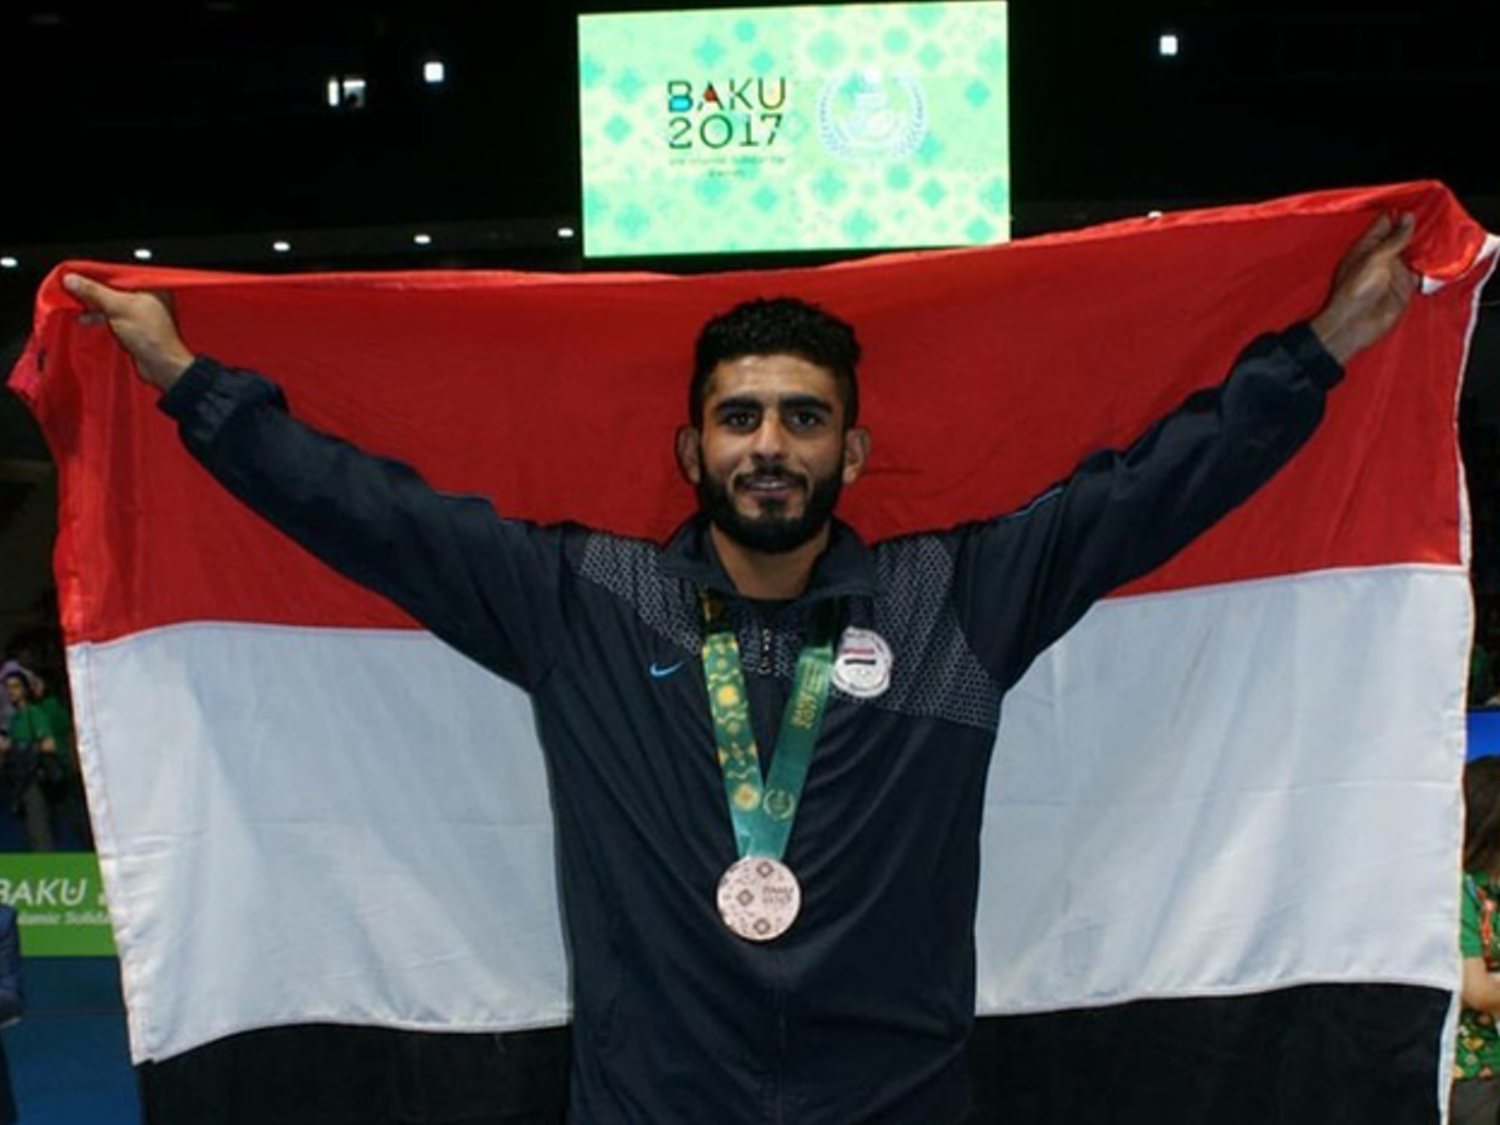 La historia del medallista yemení ahogado en Melilla: "Quería trabajar y competir en Europa"